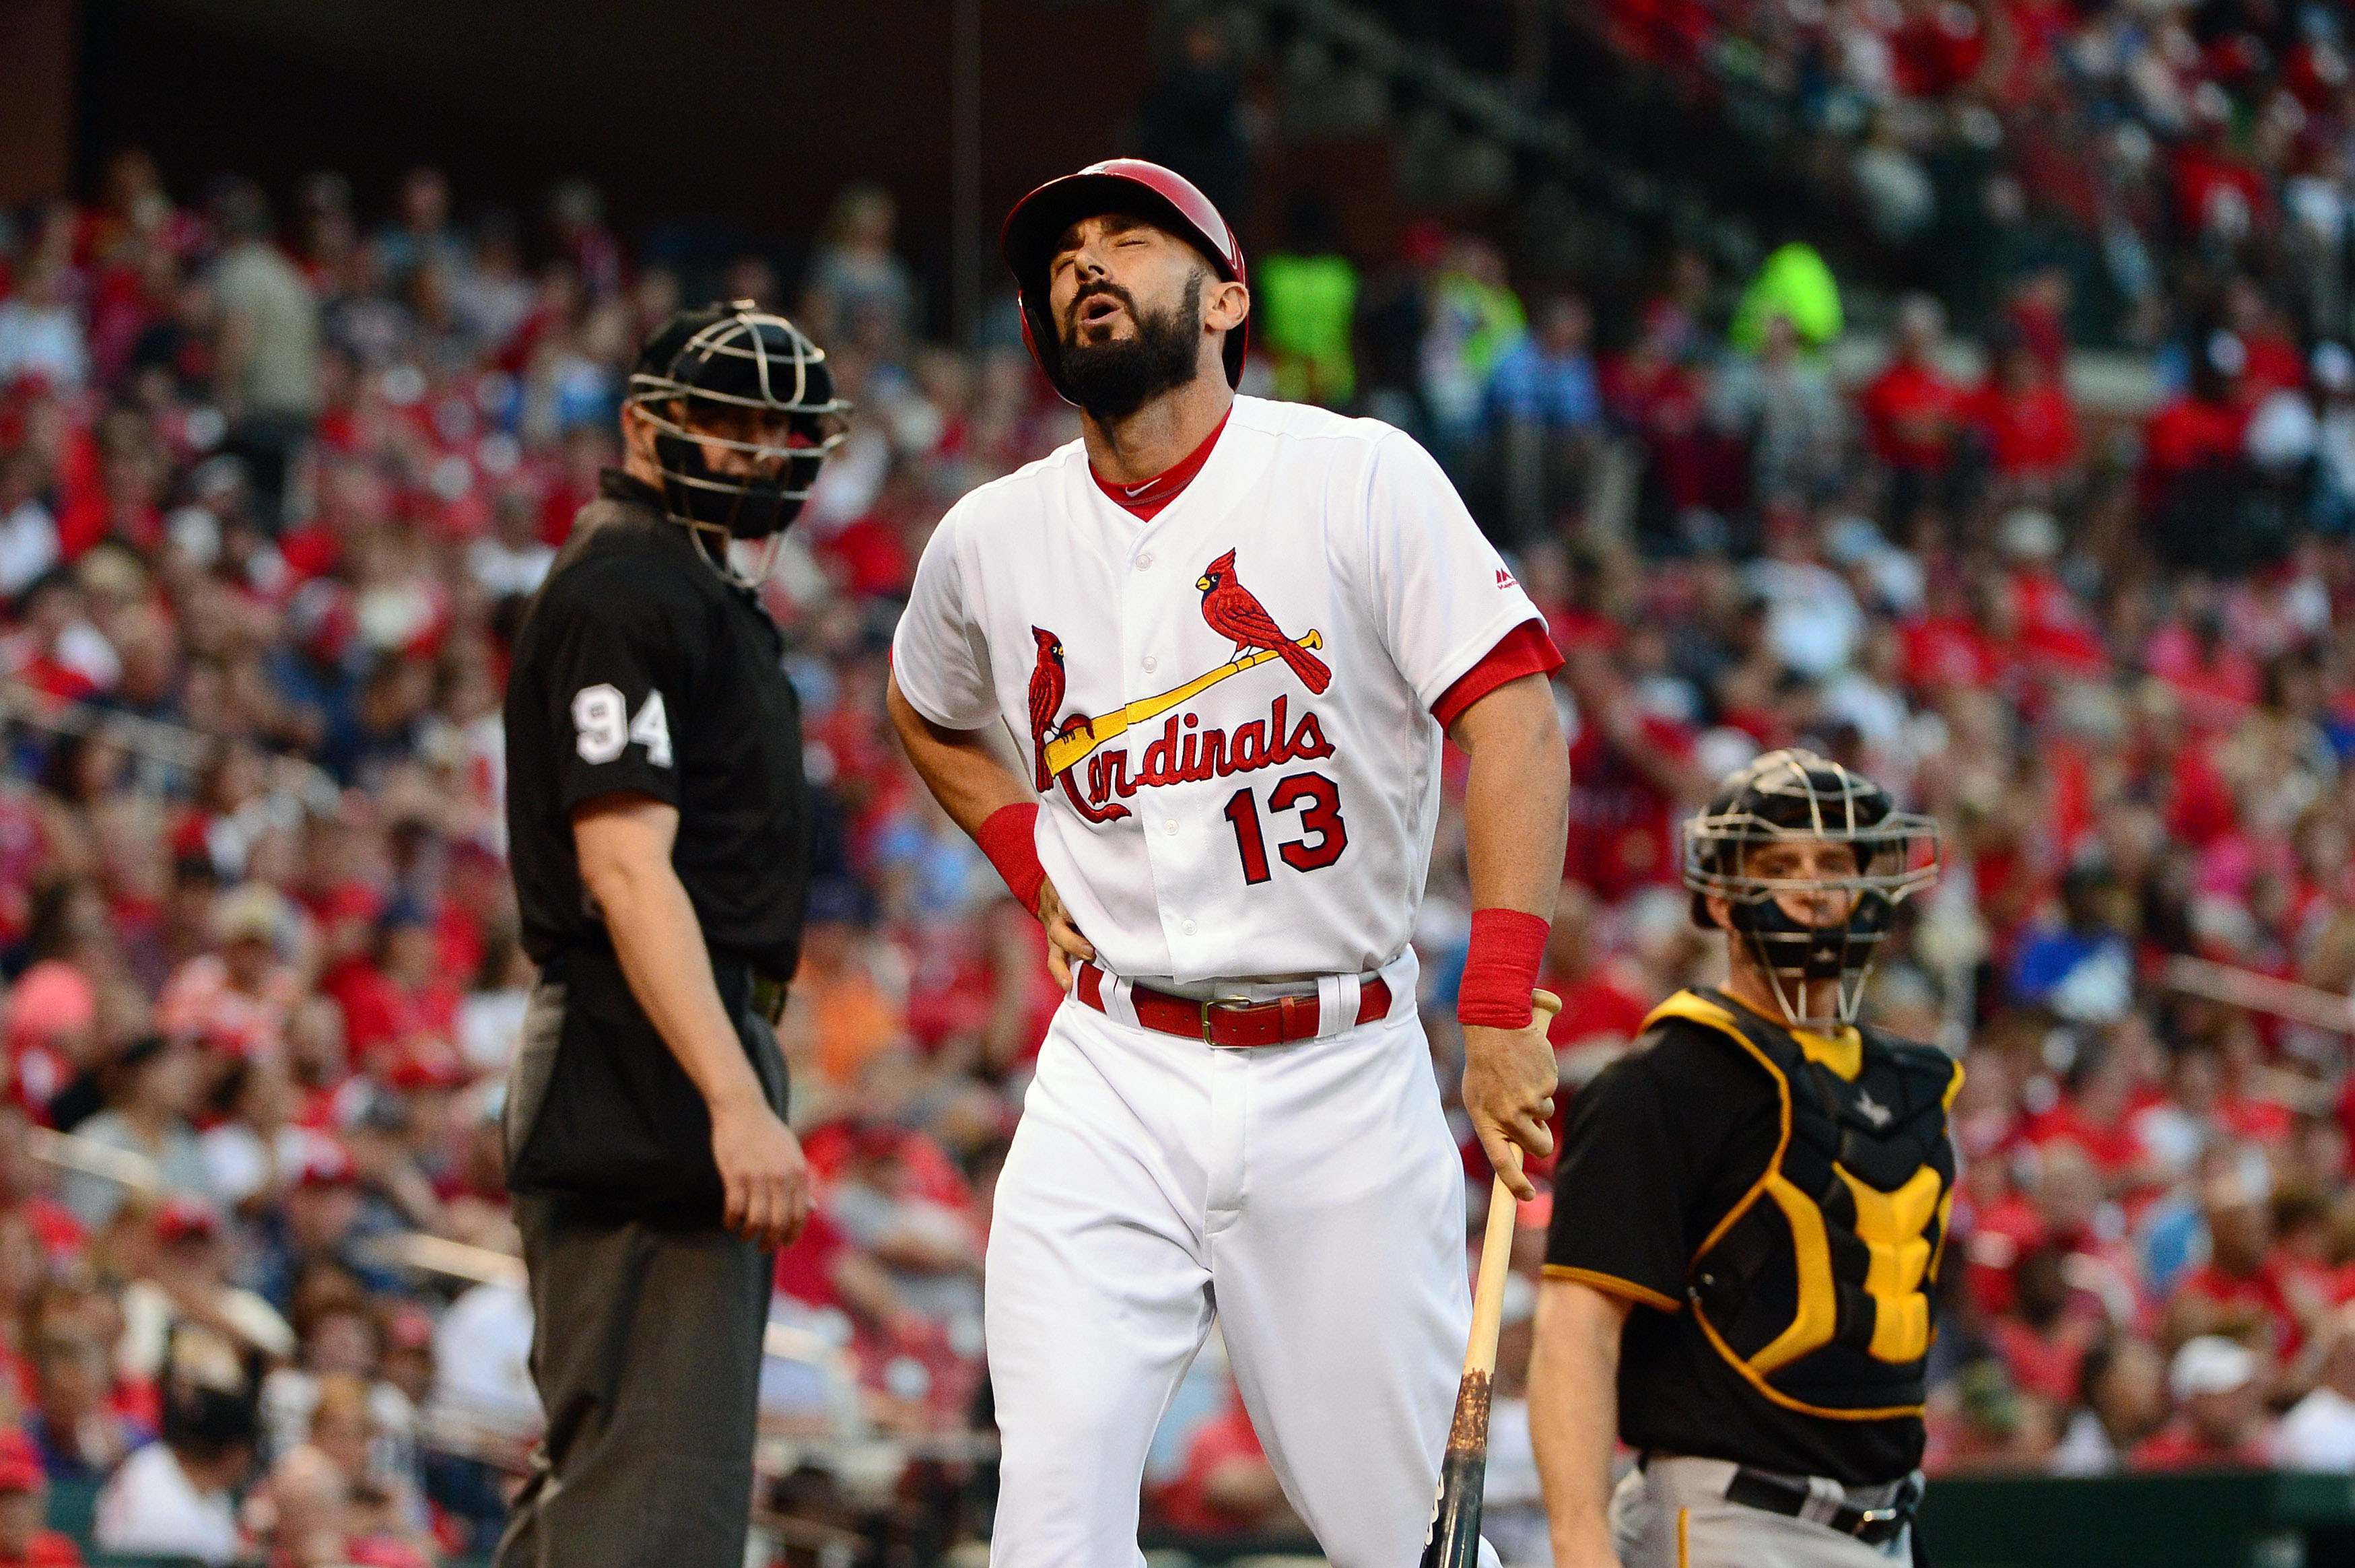 Losing Matt Carpenter: Worst-case scenario for Cardinals